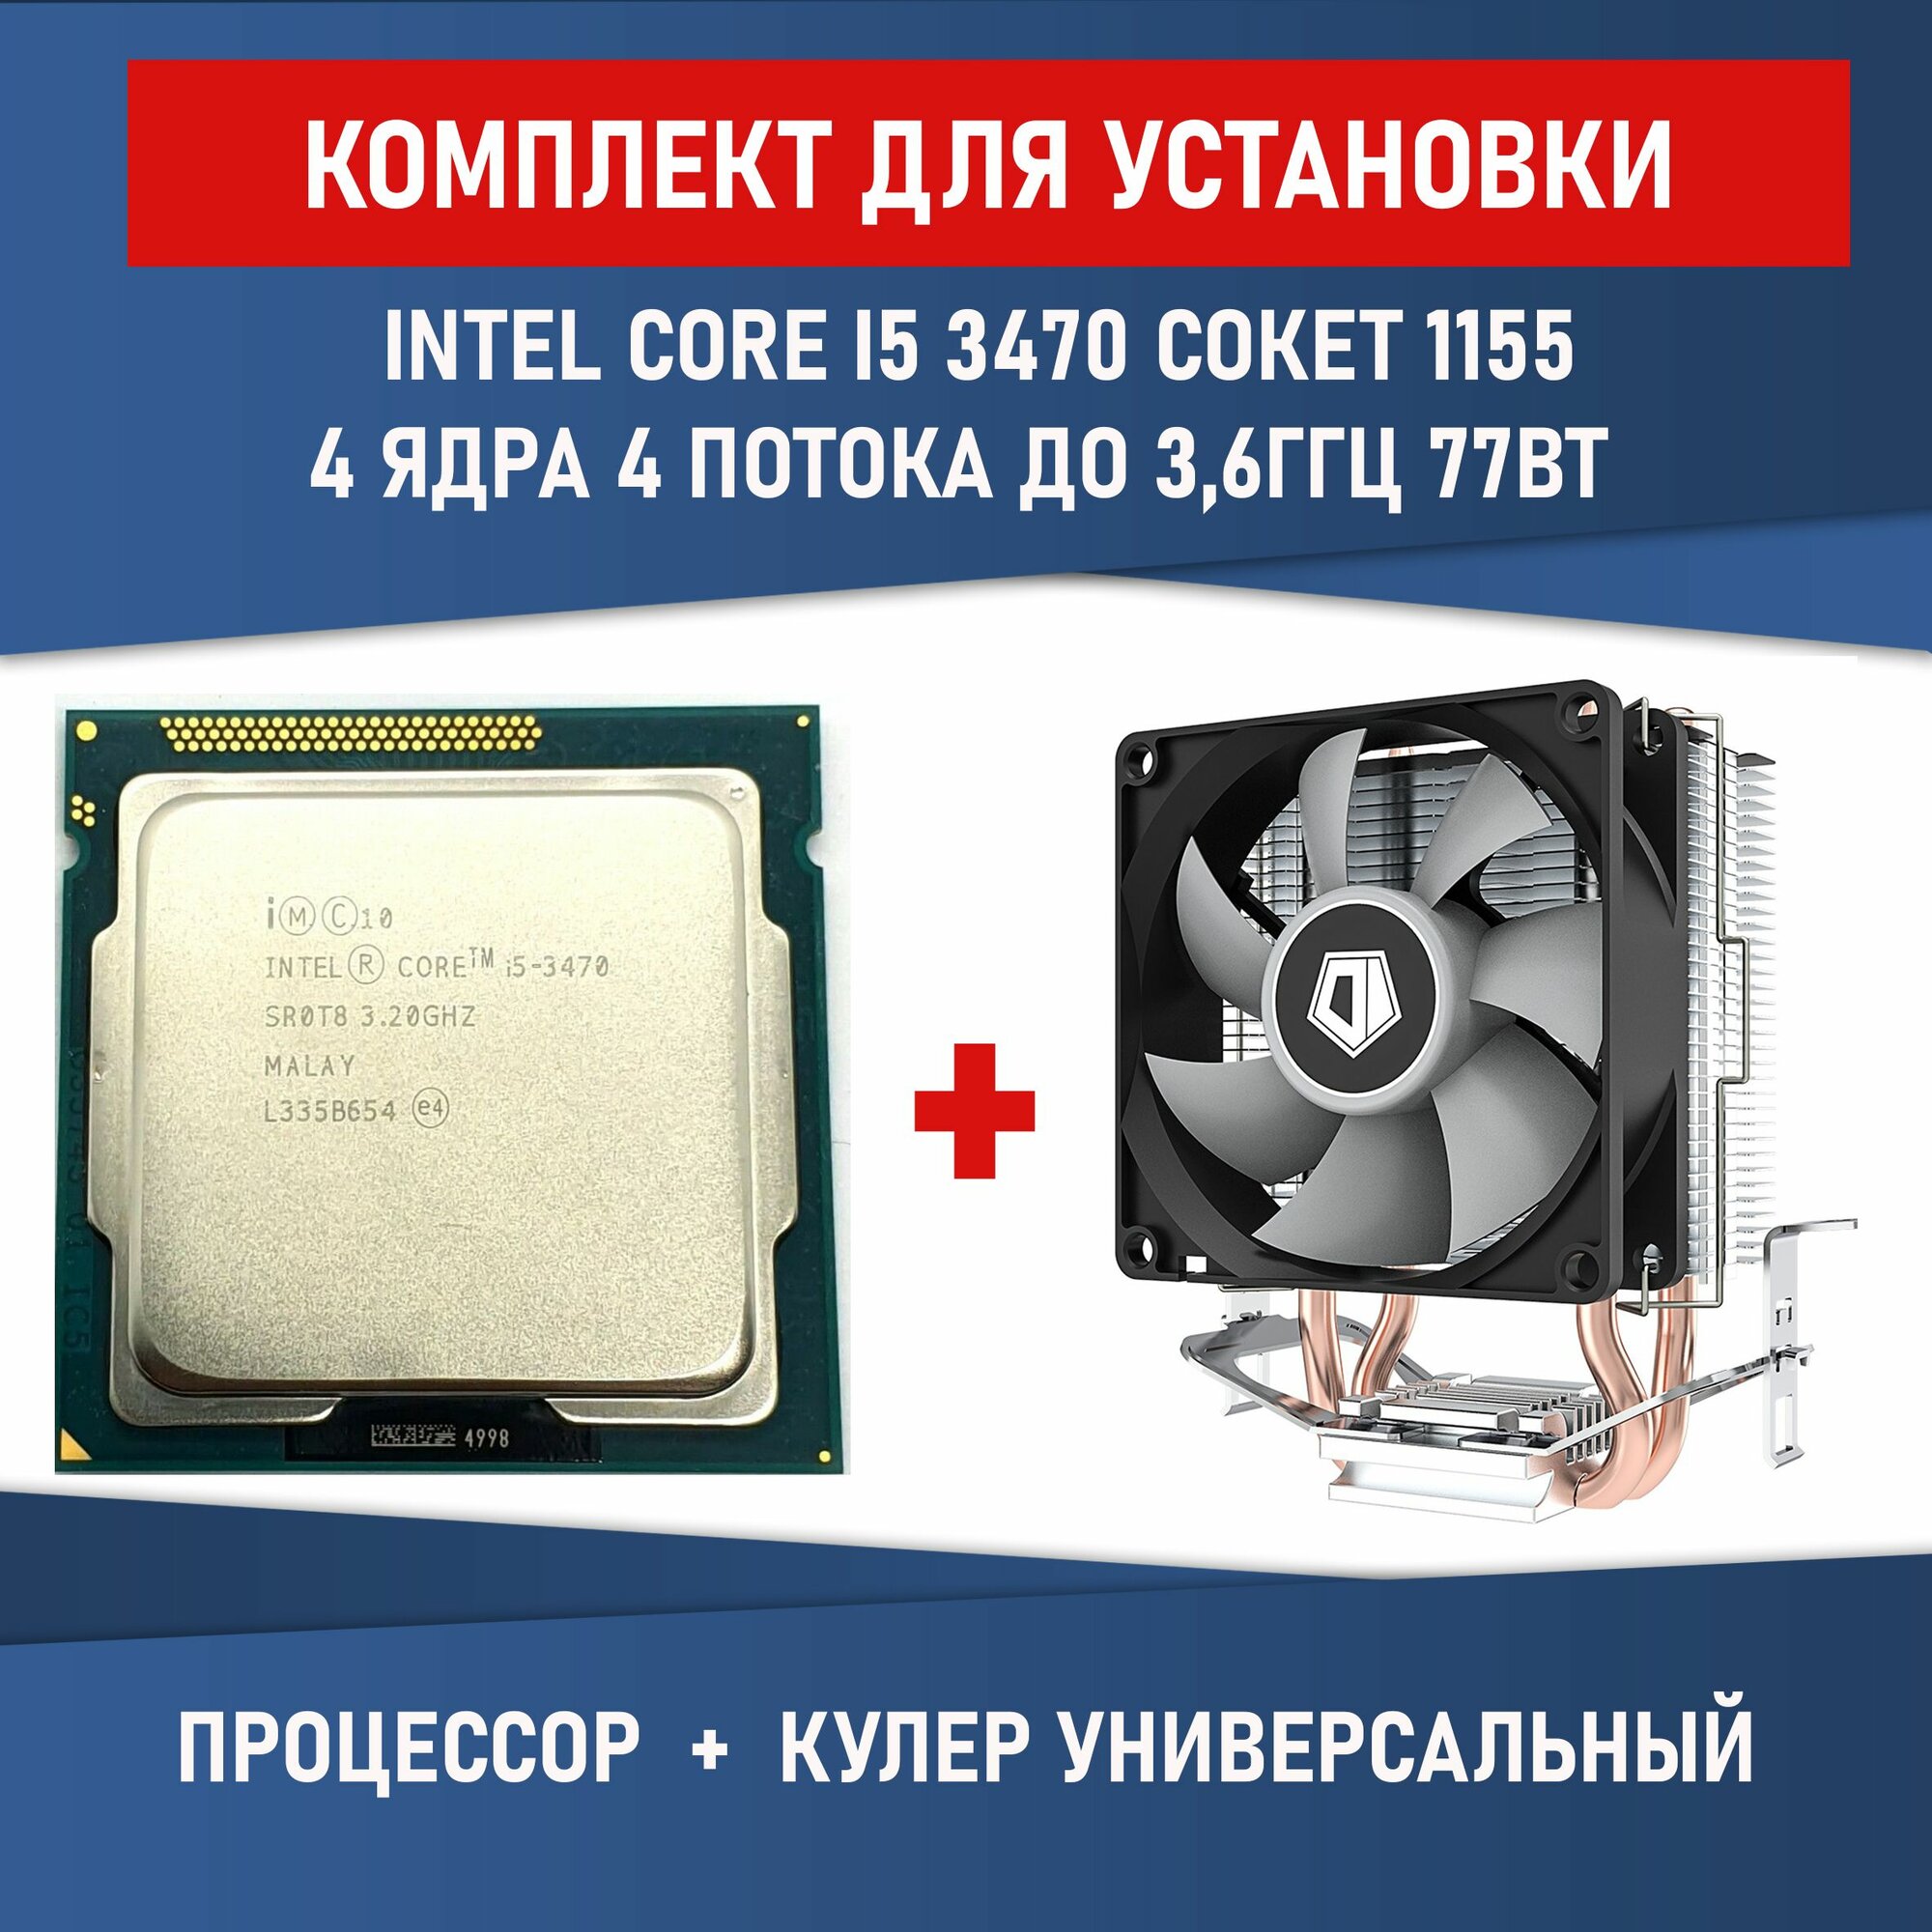 Комплект для установки Процессор Intel Core i5-3470 сокет 1155 4 ядра 4 потока 32ГГц 77Вт + Кулер ID-COOLING SE-802-SD V3